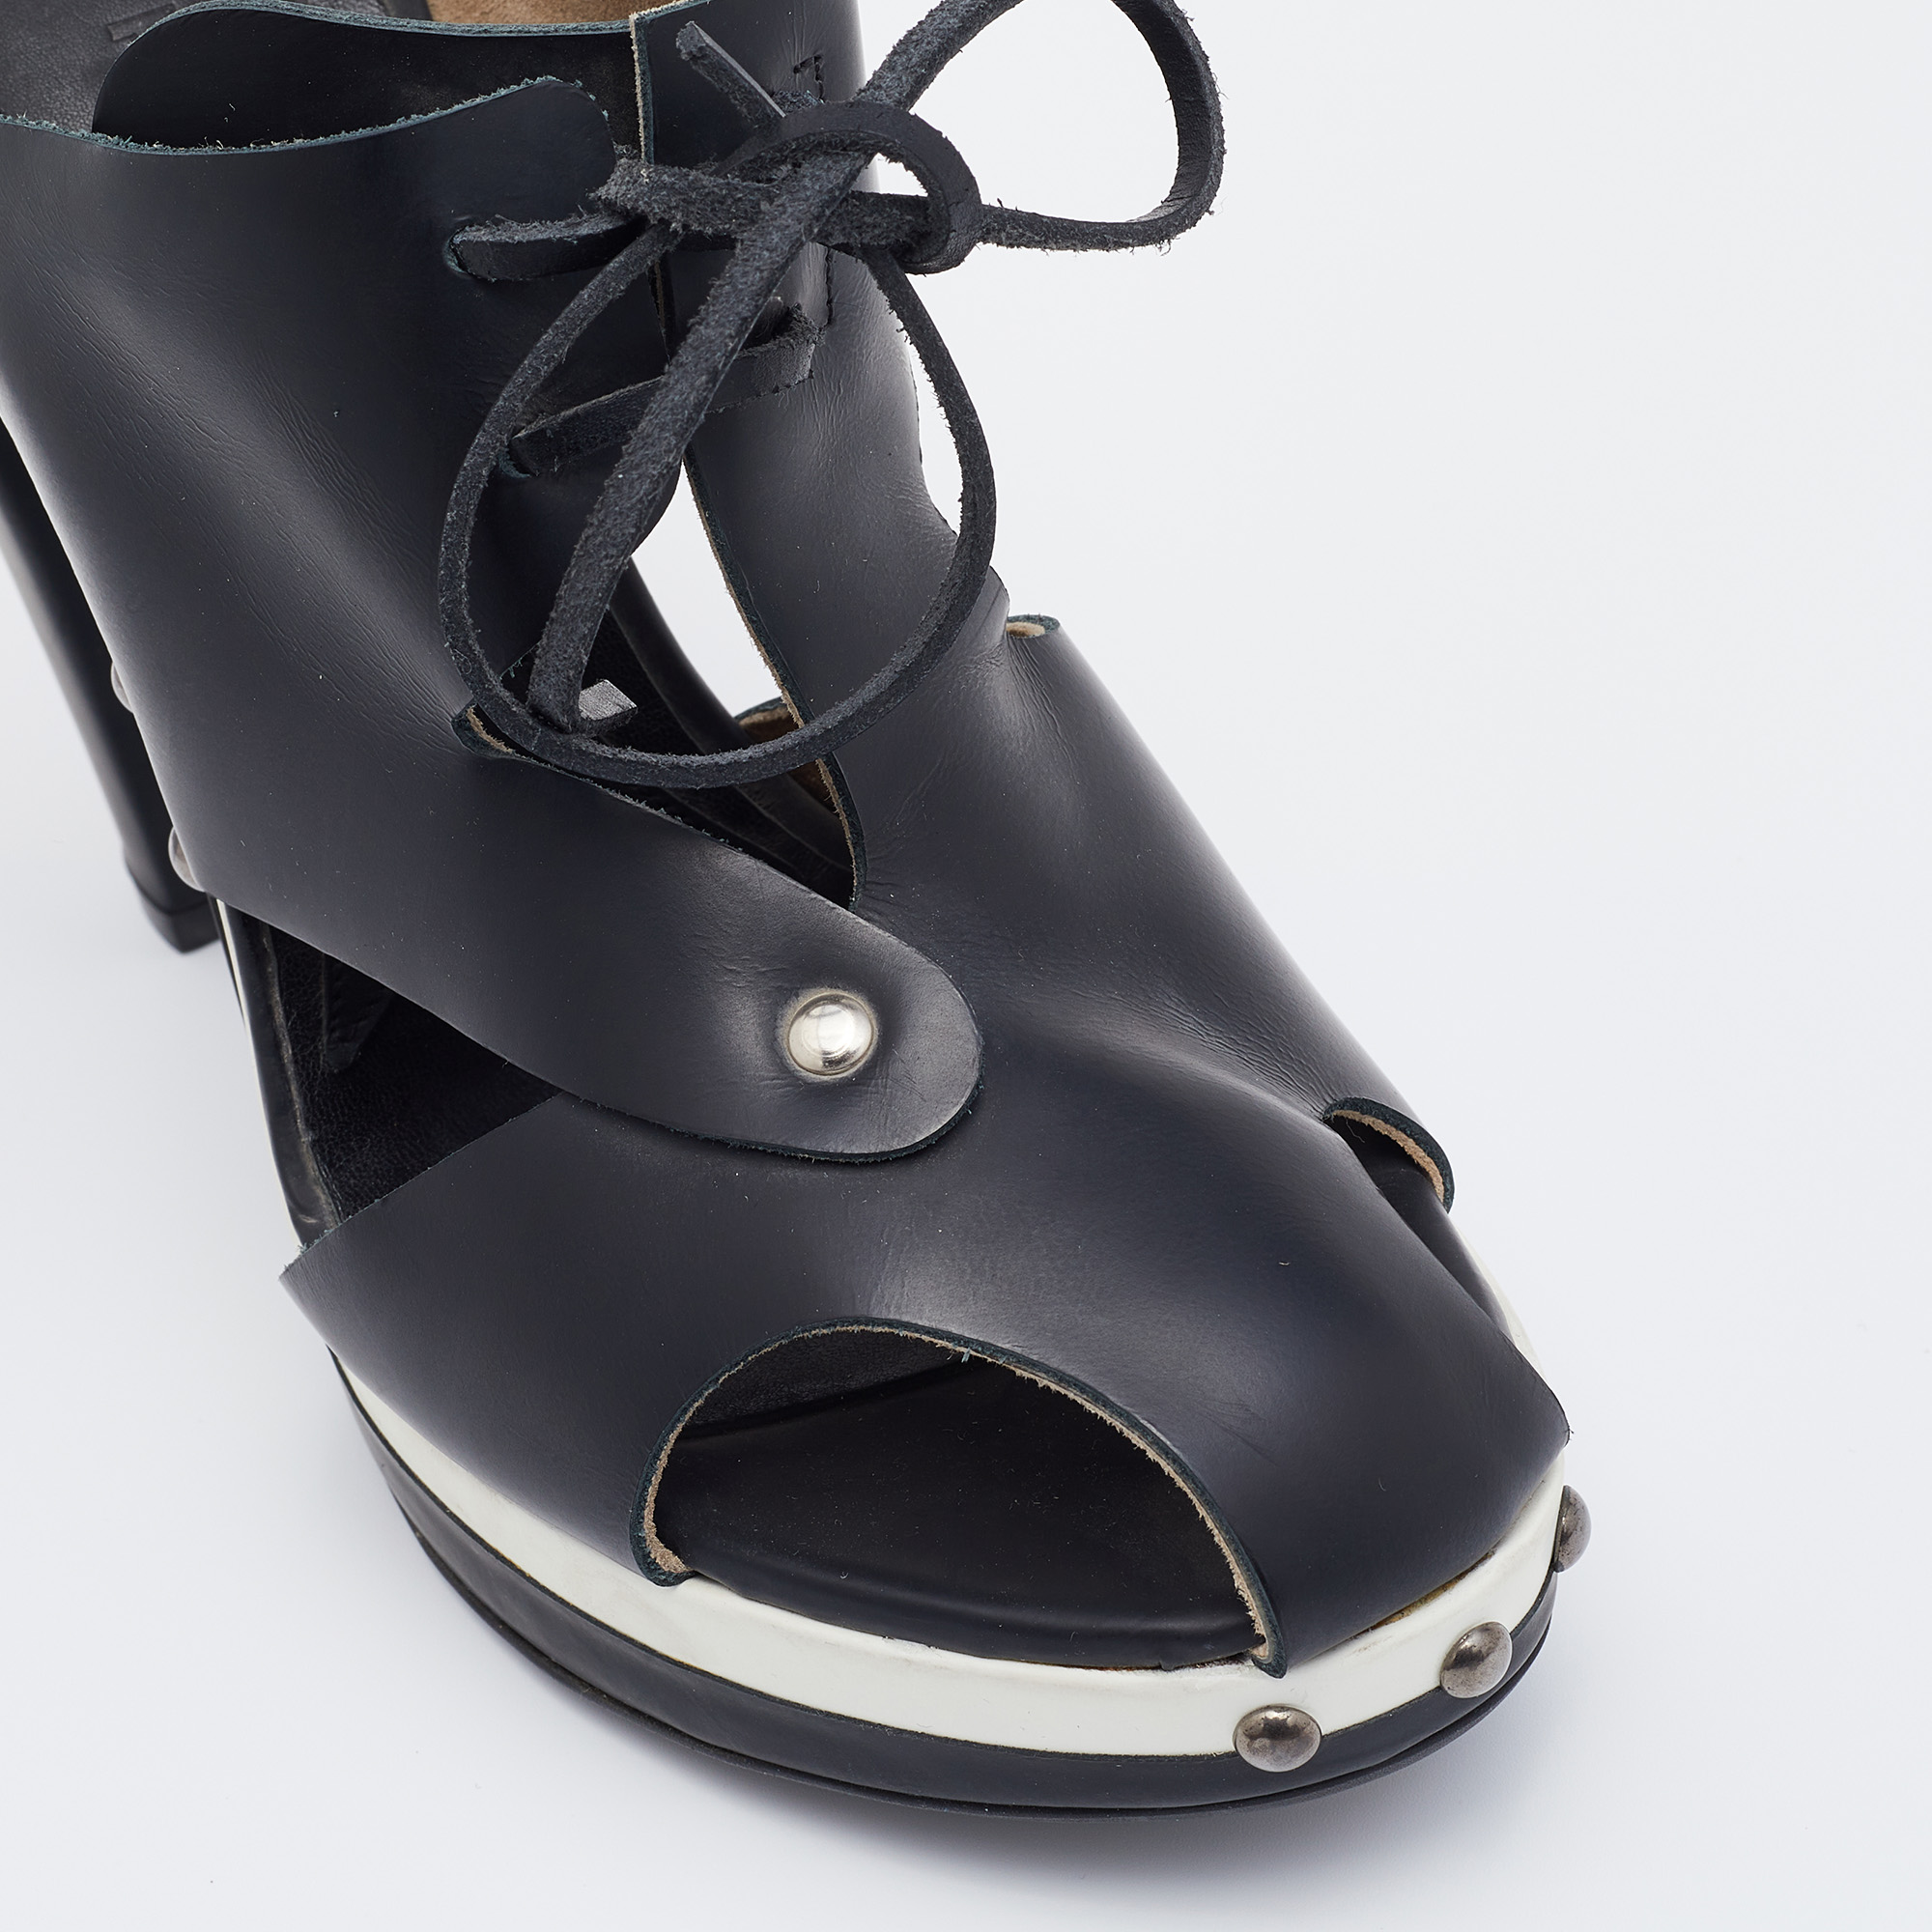 Marni Black Leather Platform Sandals Size 38